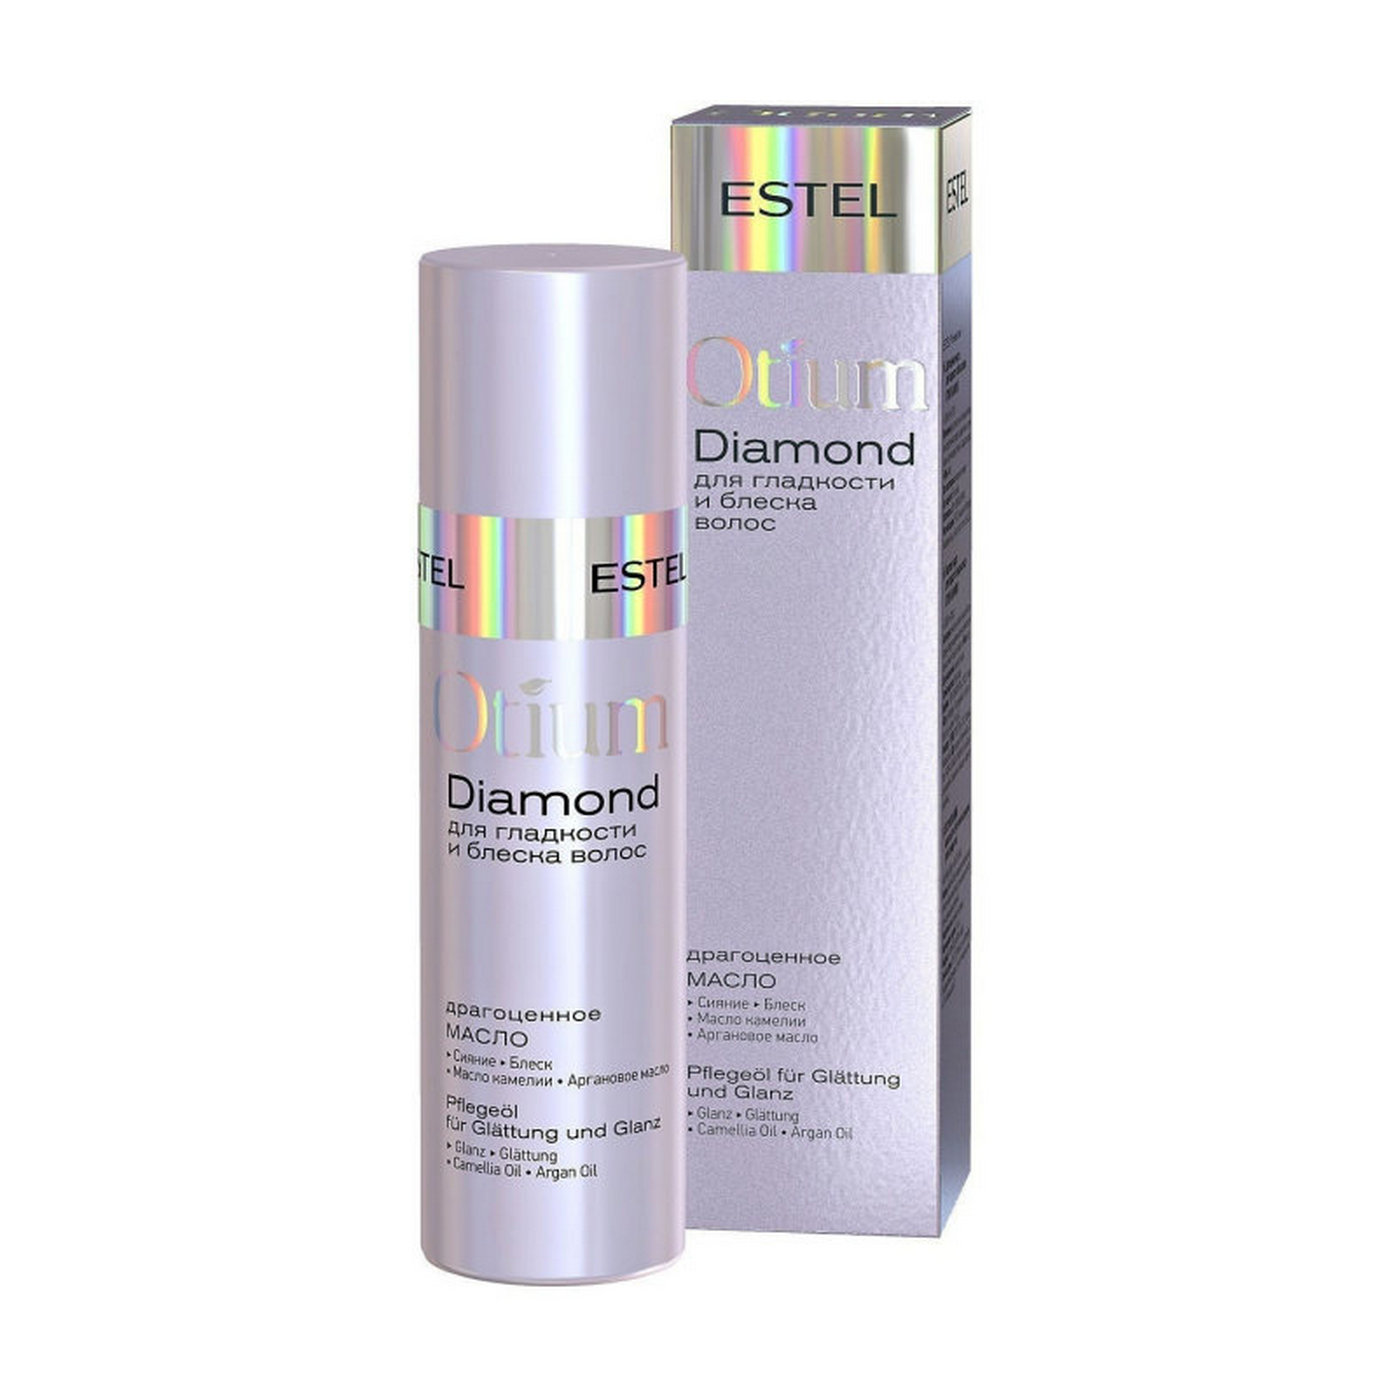 Драгоценное масло для волос. Крем-термозащита Otium Diamond для гладкости. Estel Otium Diamond крем-термозащита для гладкости и блеска волос, 100 мл. Отиум диамонд для гладкости и блеска. Эстель Diamond для гладкости и блеска.